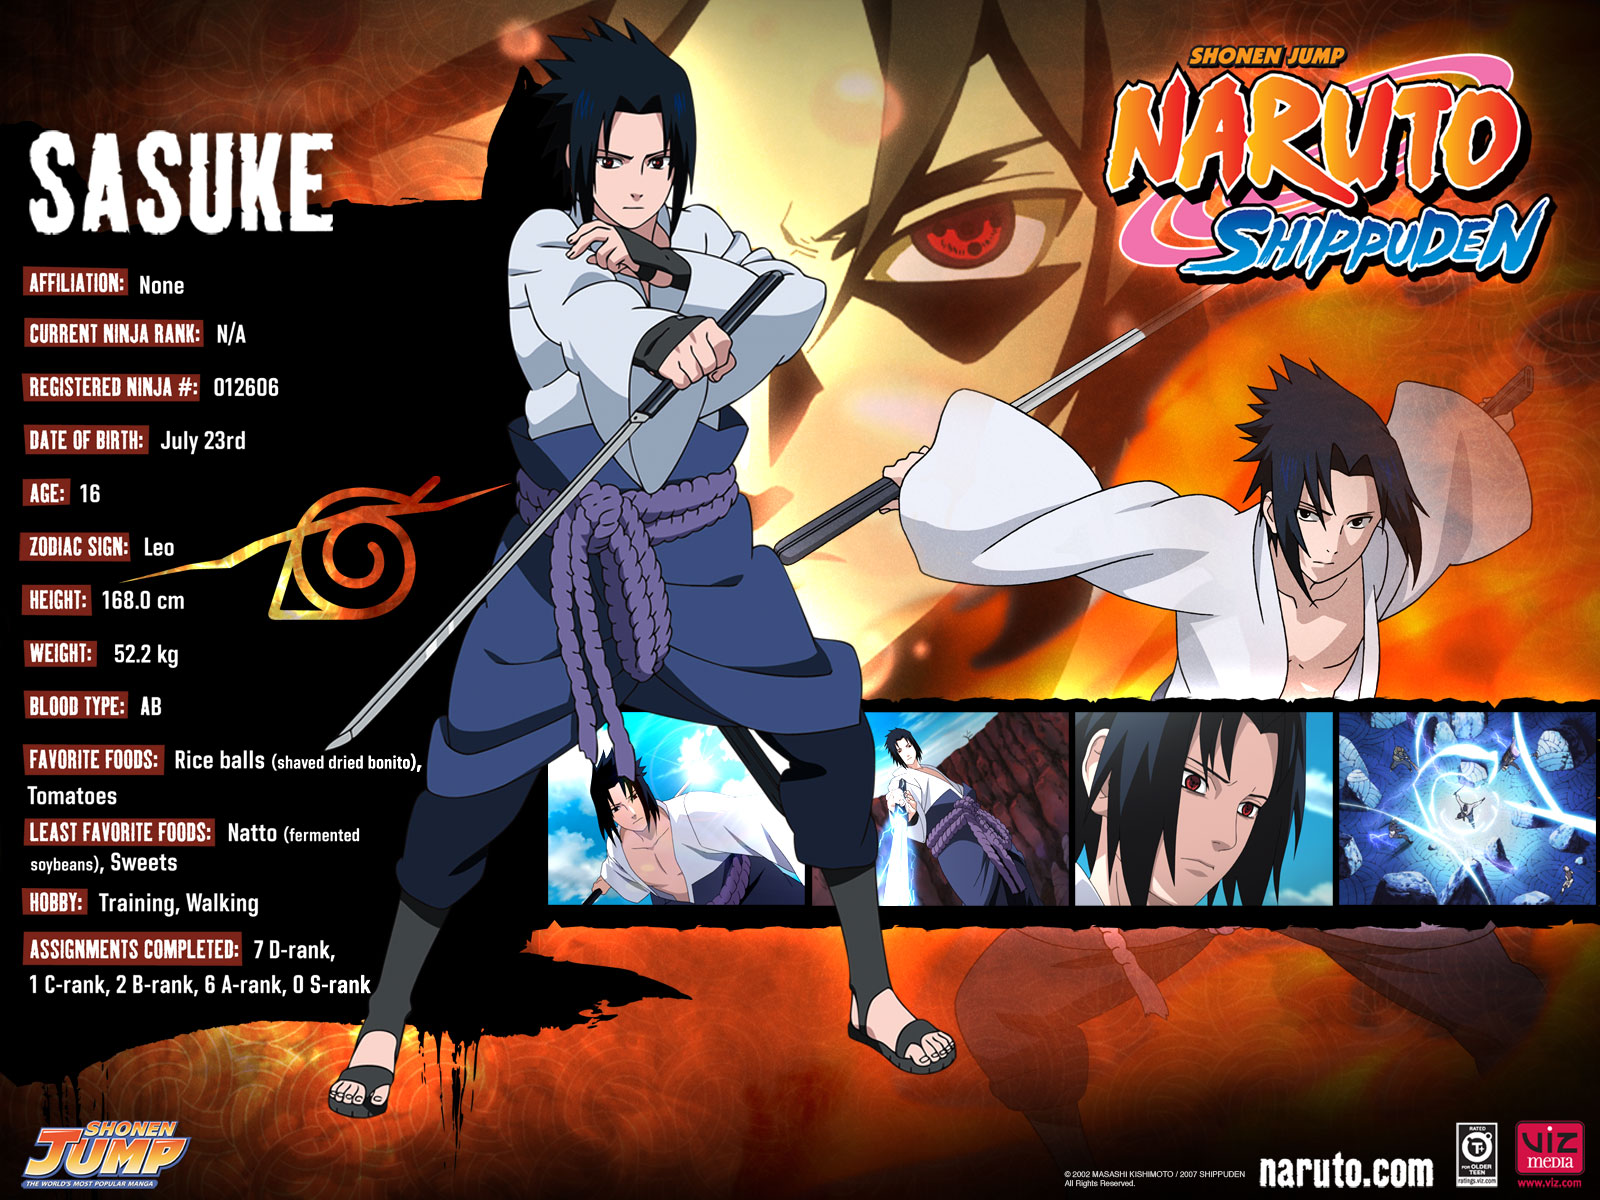 Naruto Shippuden Sasuke Anime Wallpaper - Naruto Shippuden Stats - HD Wallpaper 